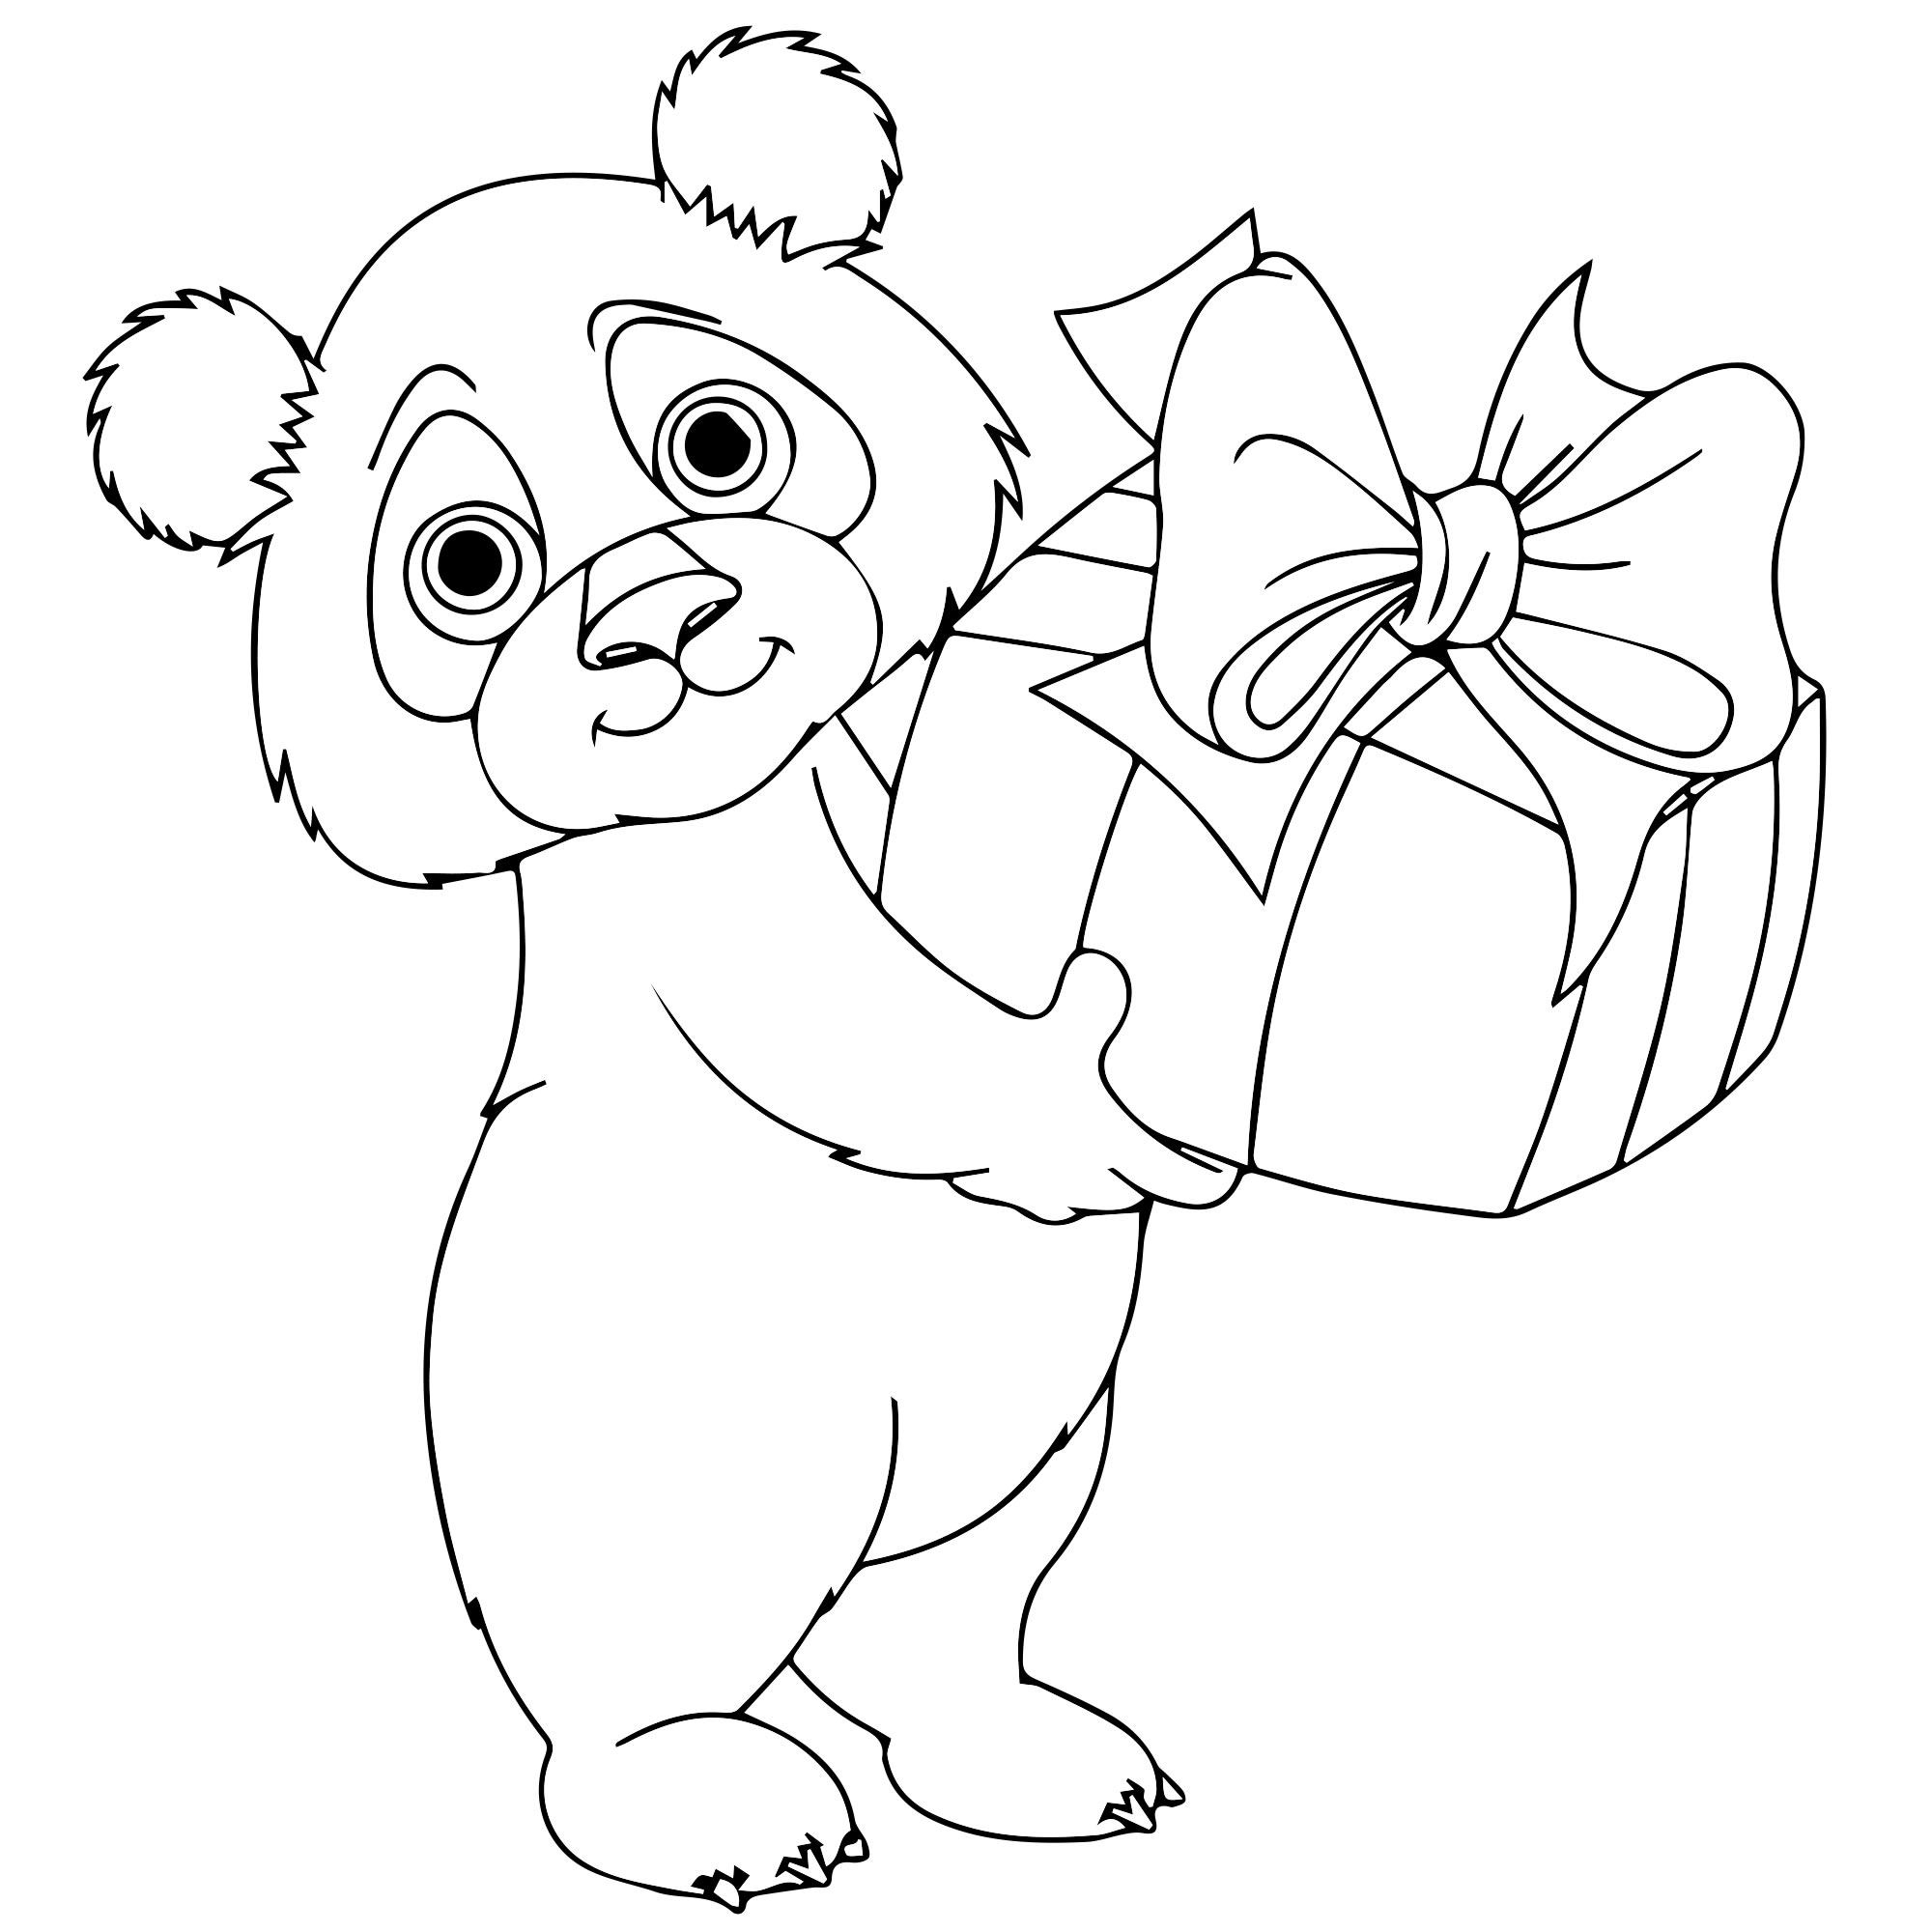 Скачать, распечатать или рисовать онлайн раскраски панда